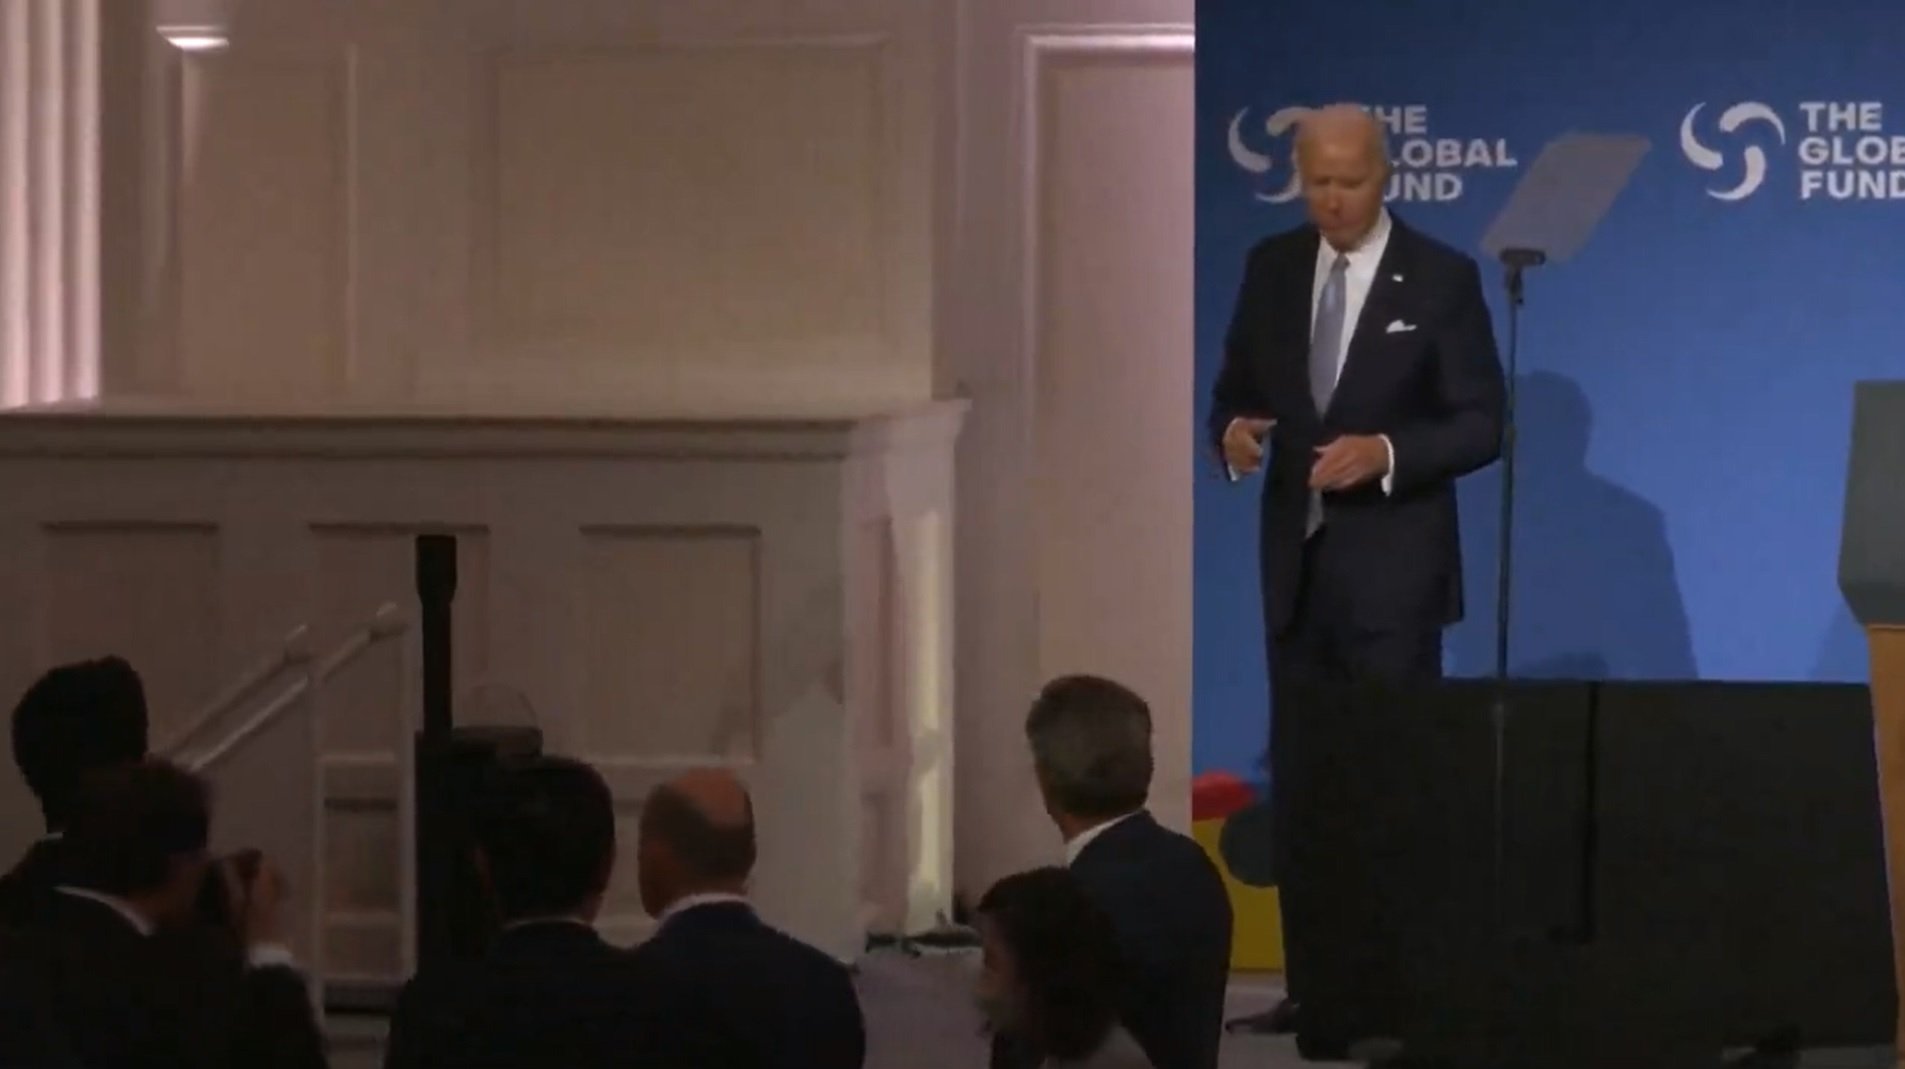 Salten les alarmes: Joe Biden visiblement desorientat durant un acte de l'ONU